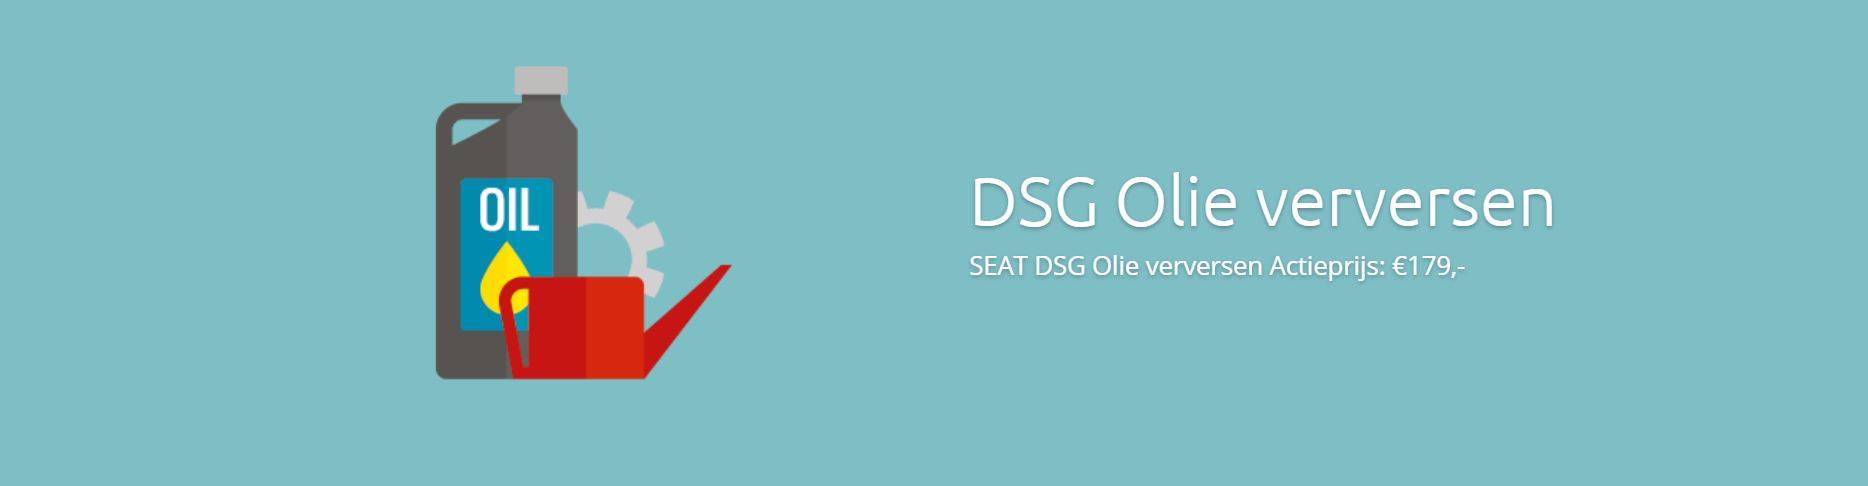 Seat DSG Olie Verversen bij schakel klachten DSG Olie Verversen Actieprijs €179 DSG Service Dealers Seat Specialisten DSG Service Dealer erg gunstig